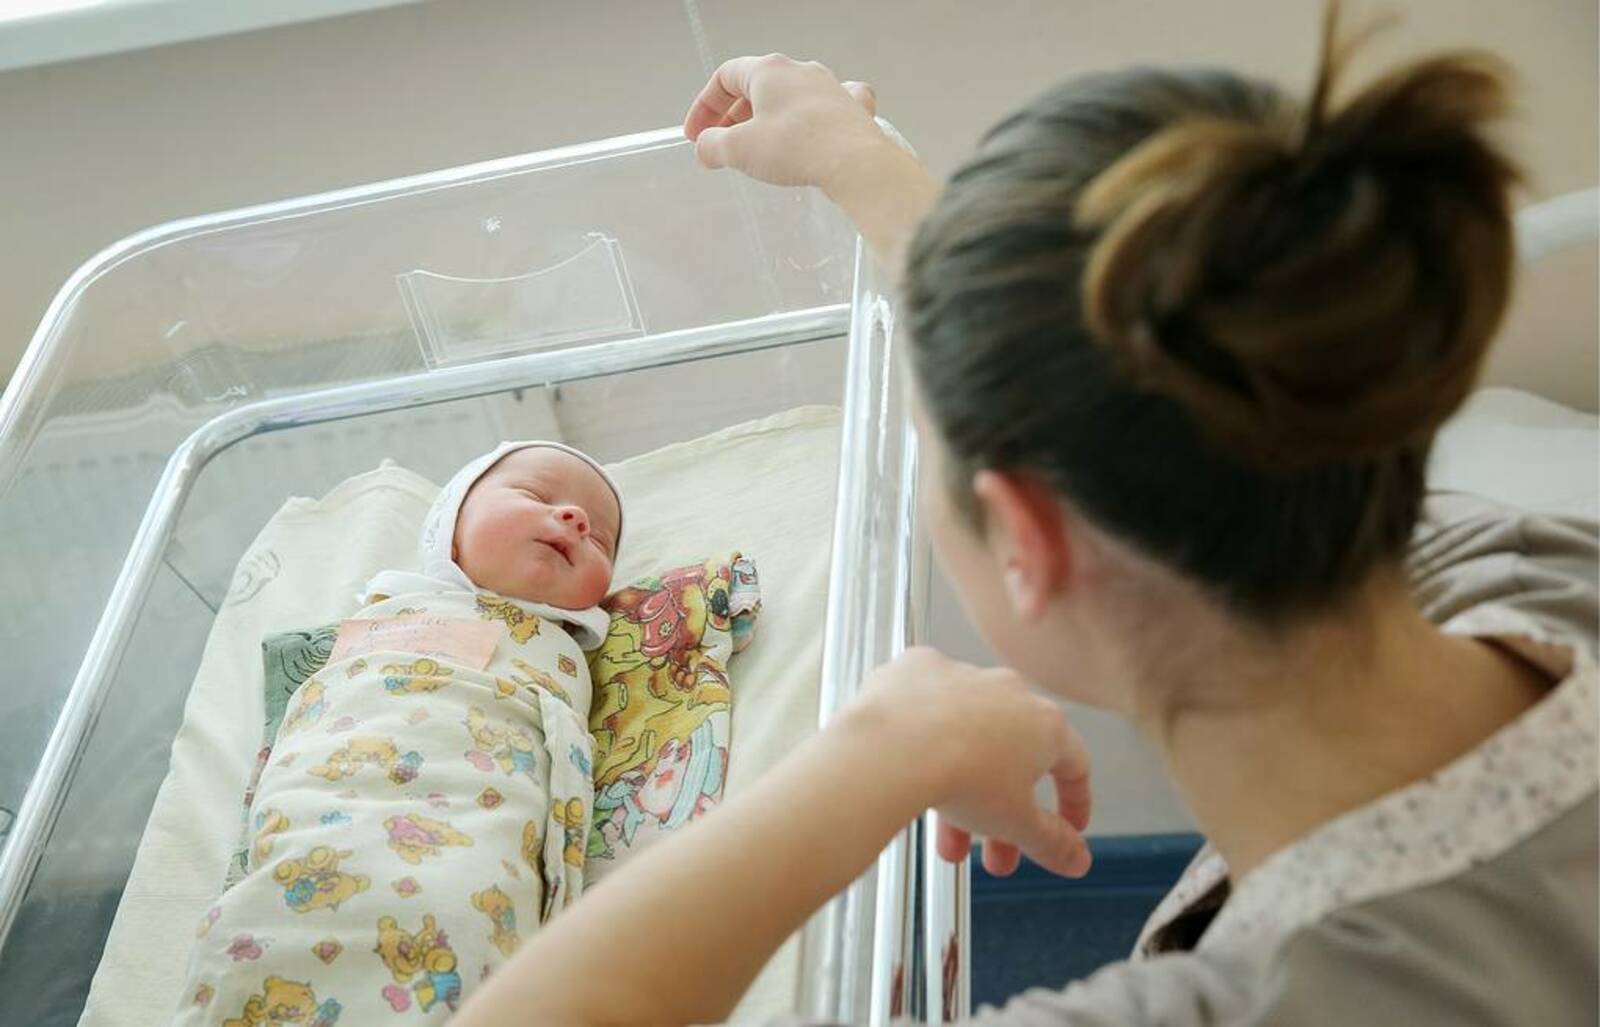 В ноябре 2021 года в Башкортостане зафиксирован рост рождаемости